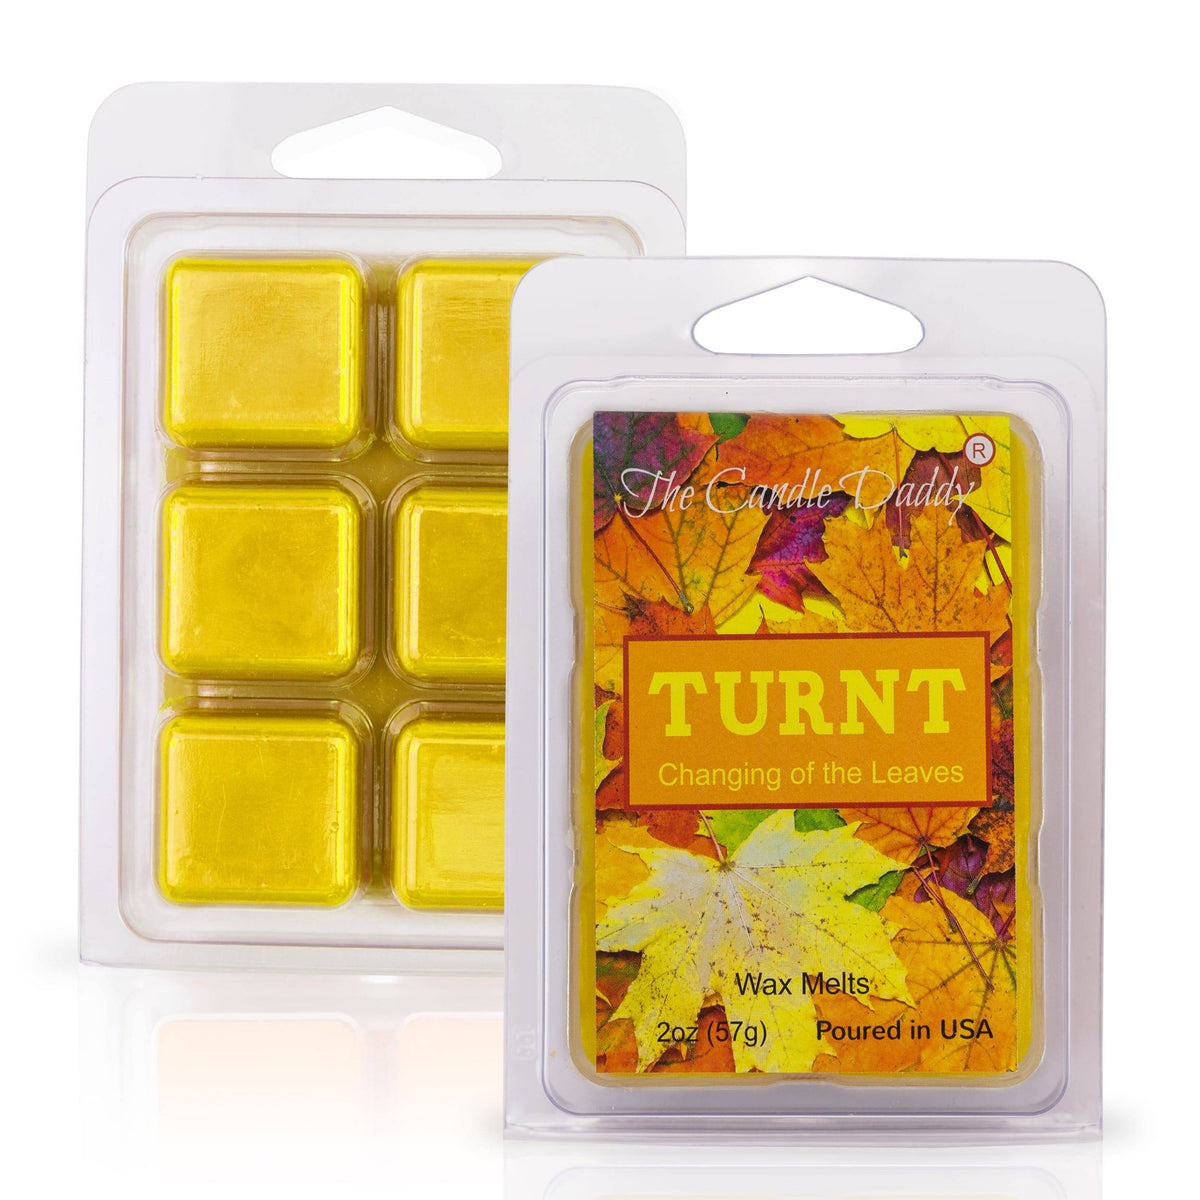 Pumpkin Patch - Pumpkin Scented Wax Melt Cubes - 1 Pack - 2 Ounces - 6 Cubes